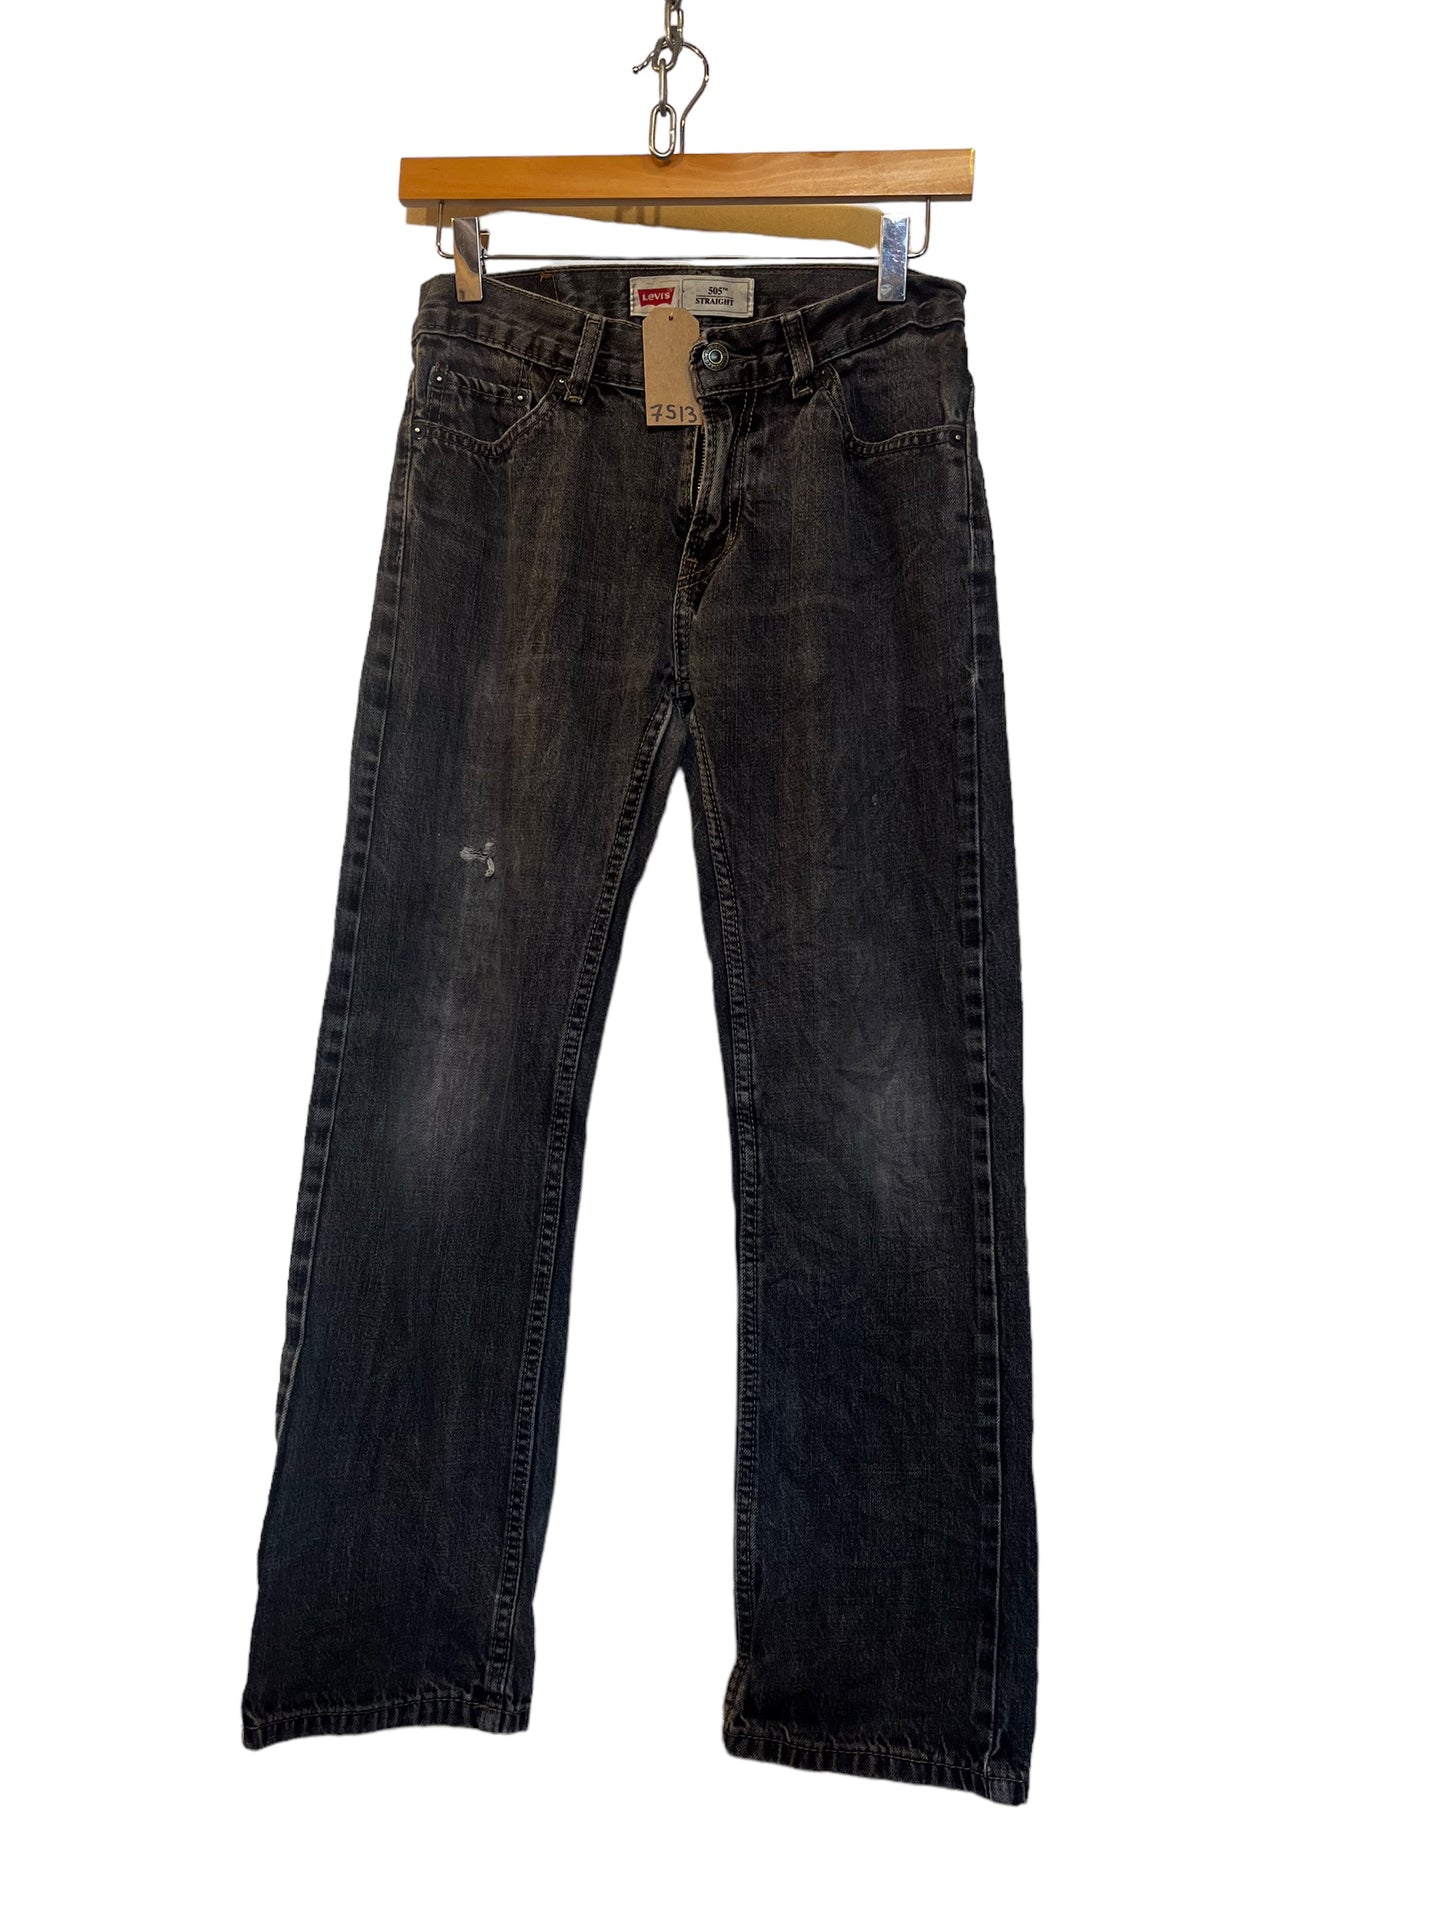 Levi 505 jeans (27x27)